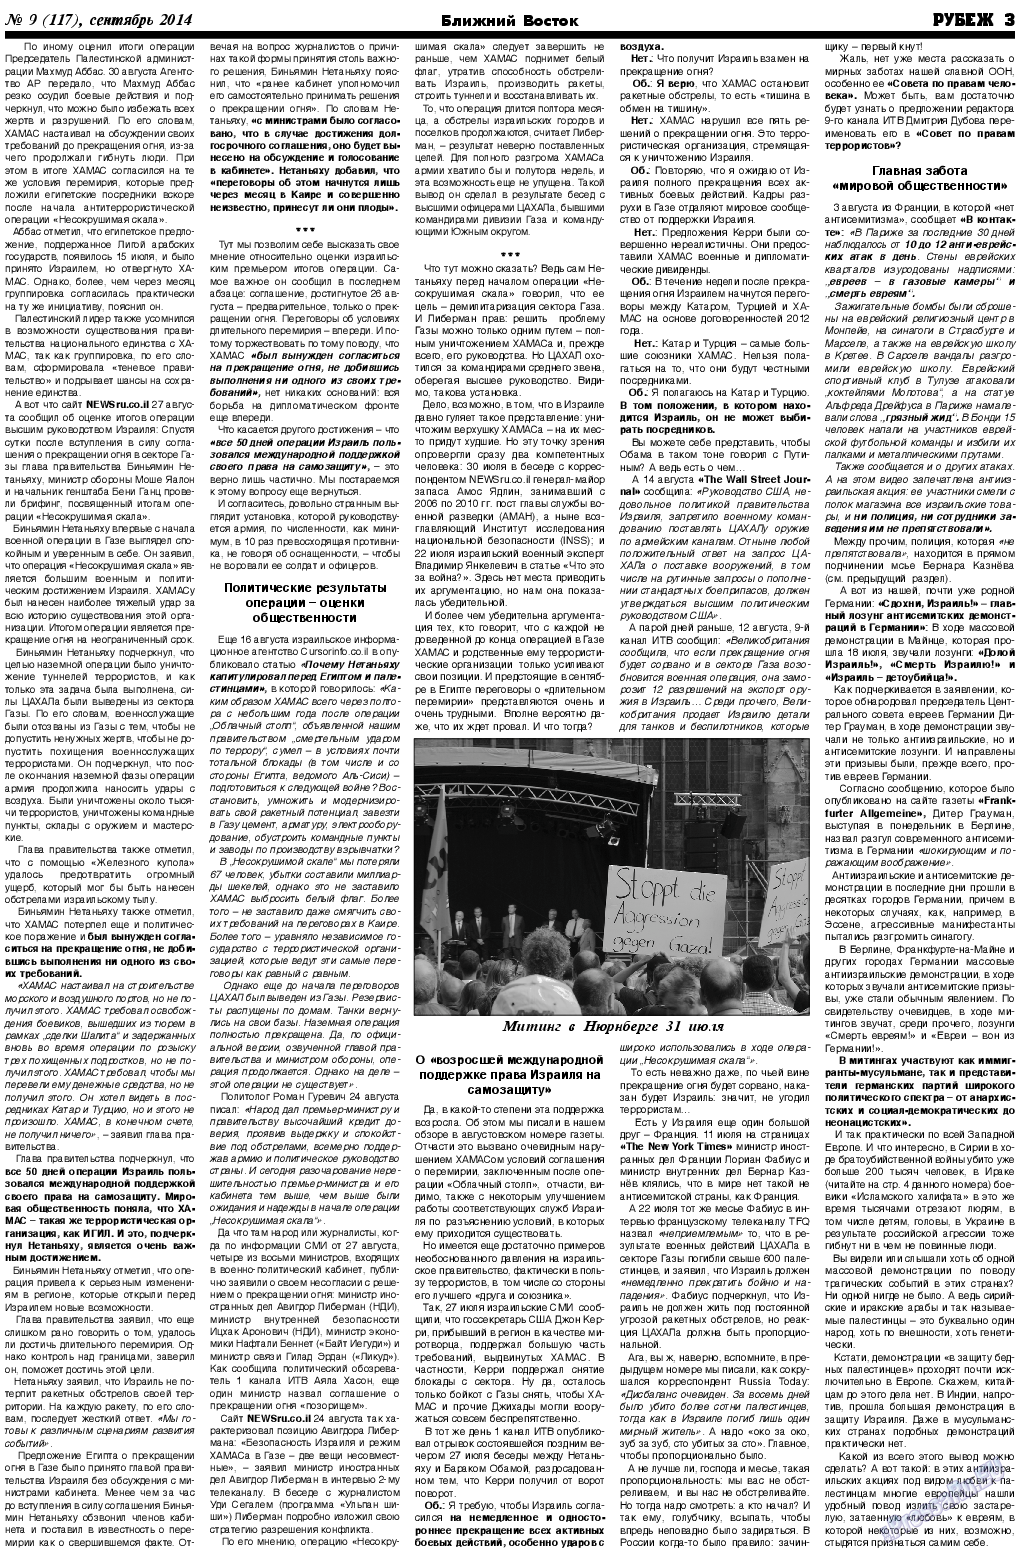 Рубеж (газета). 2014 год, номер 9, стр. 3